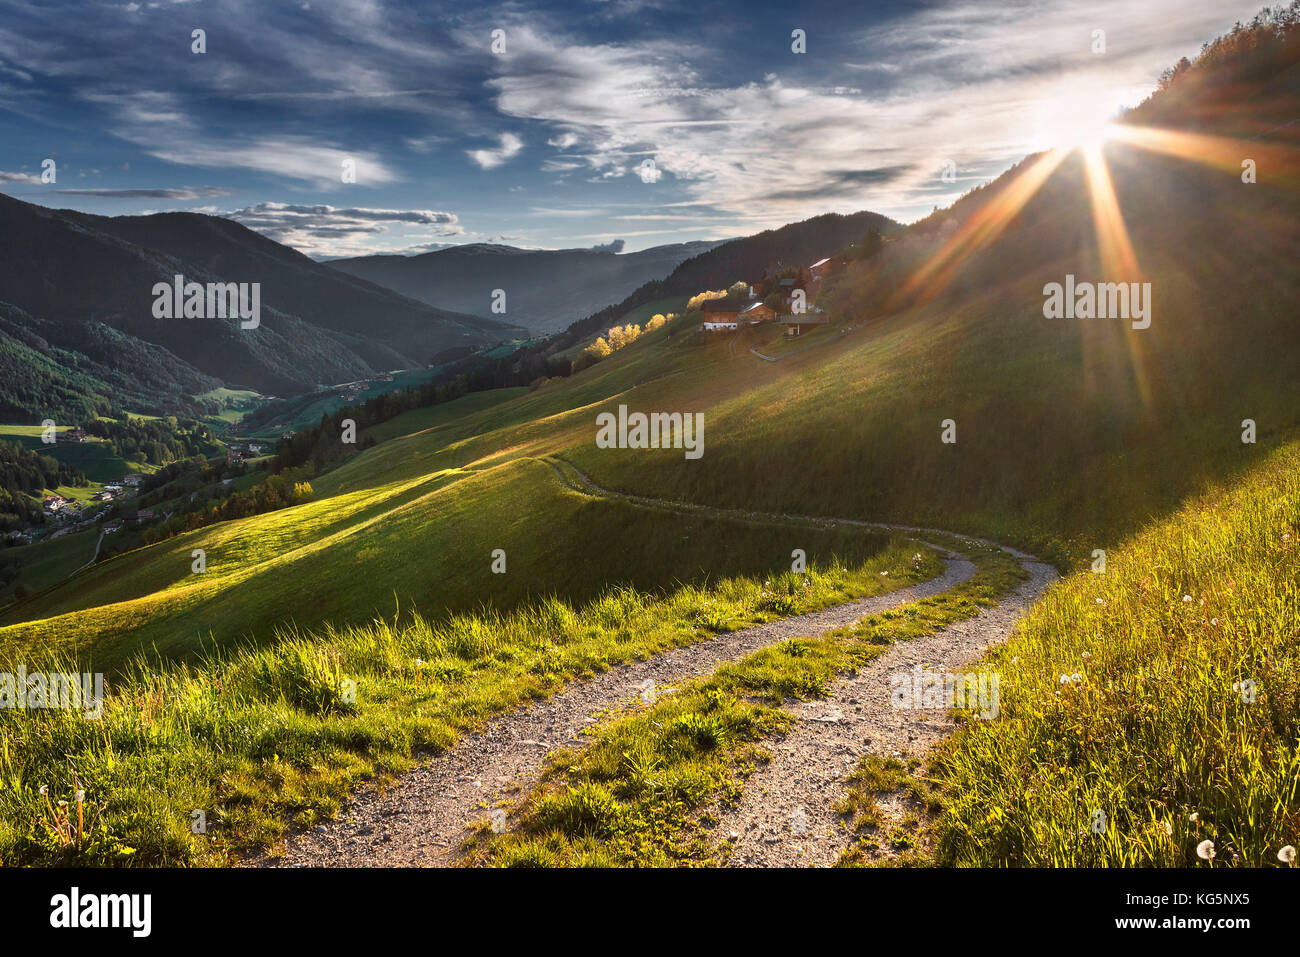 Farmer's track, Coll, Santa Magdalena, Bolzano province, Funes valley, South Tyrol region, Trentino Alto Adige, Italy, Europe Stock Photo